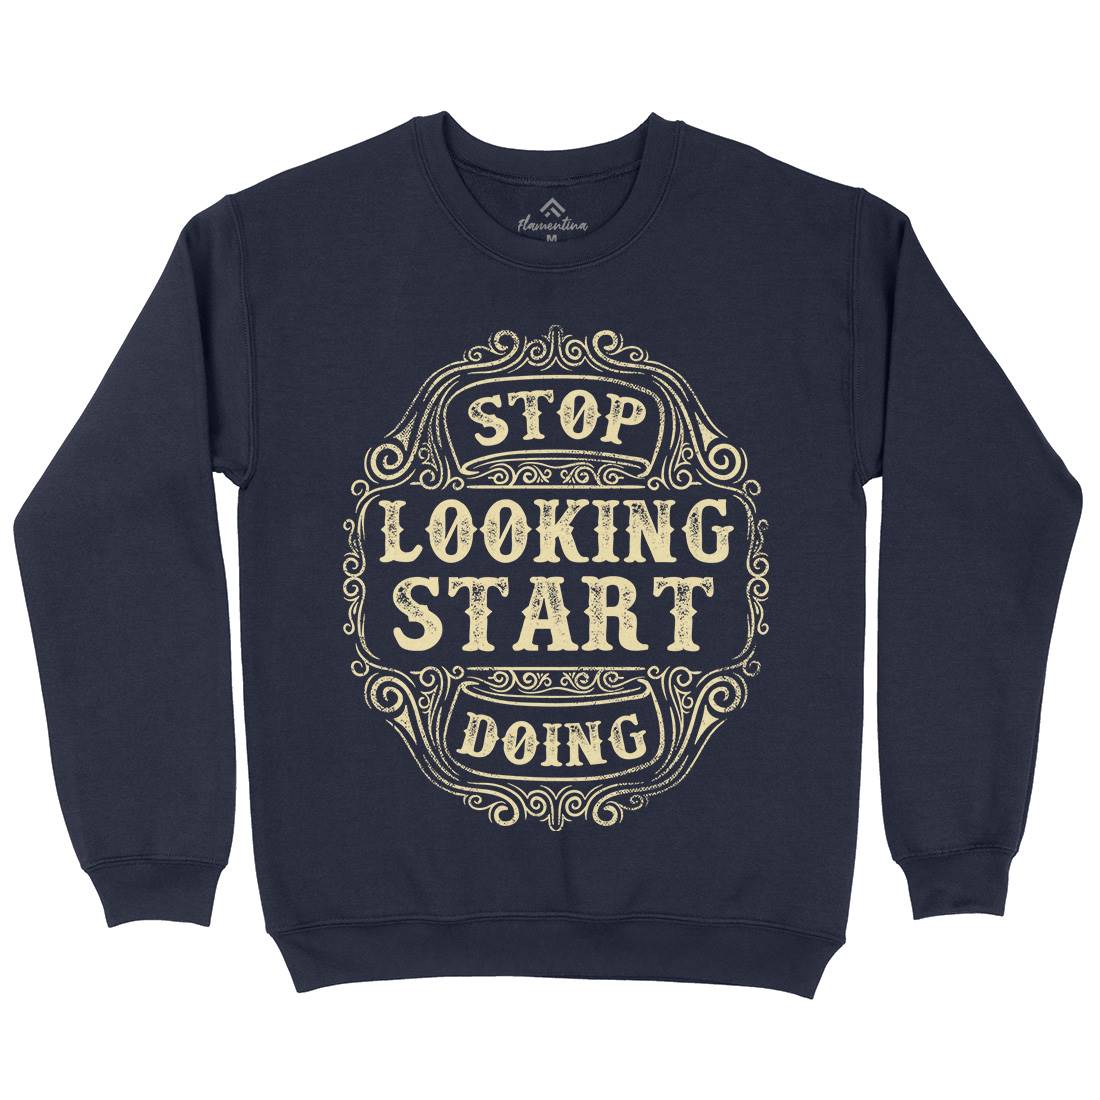 Stop Looking Start Doing Kids Crew Neck Sweatshirt Quotes C979